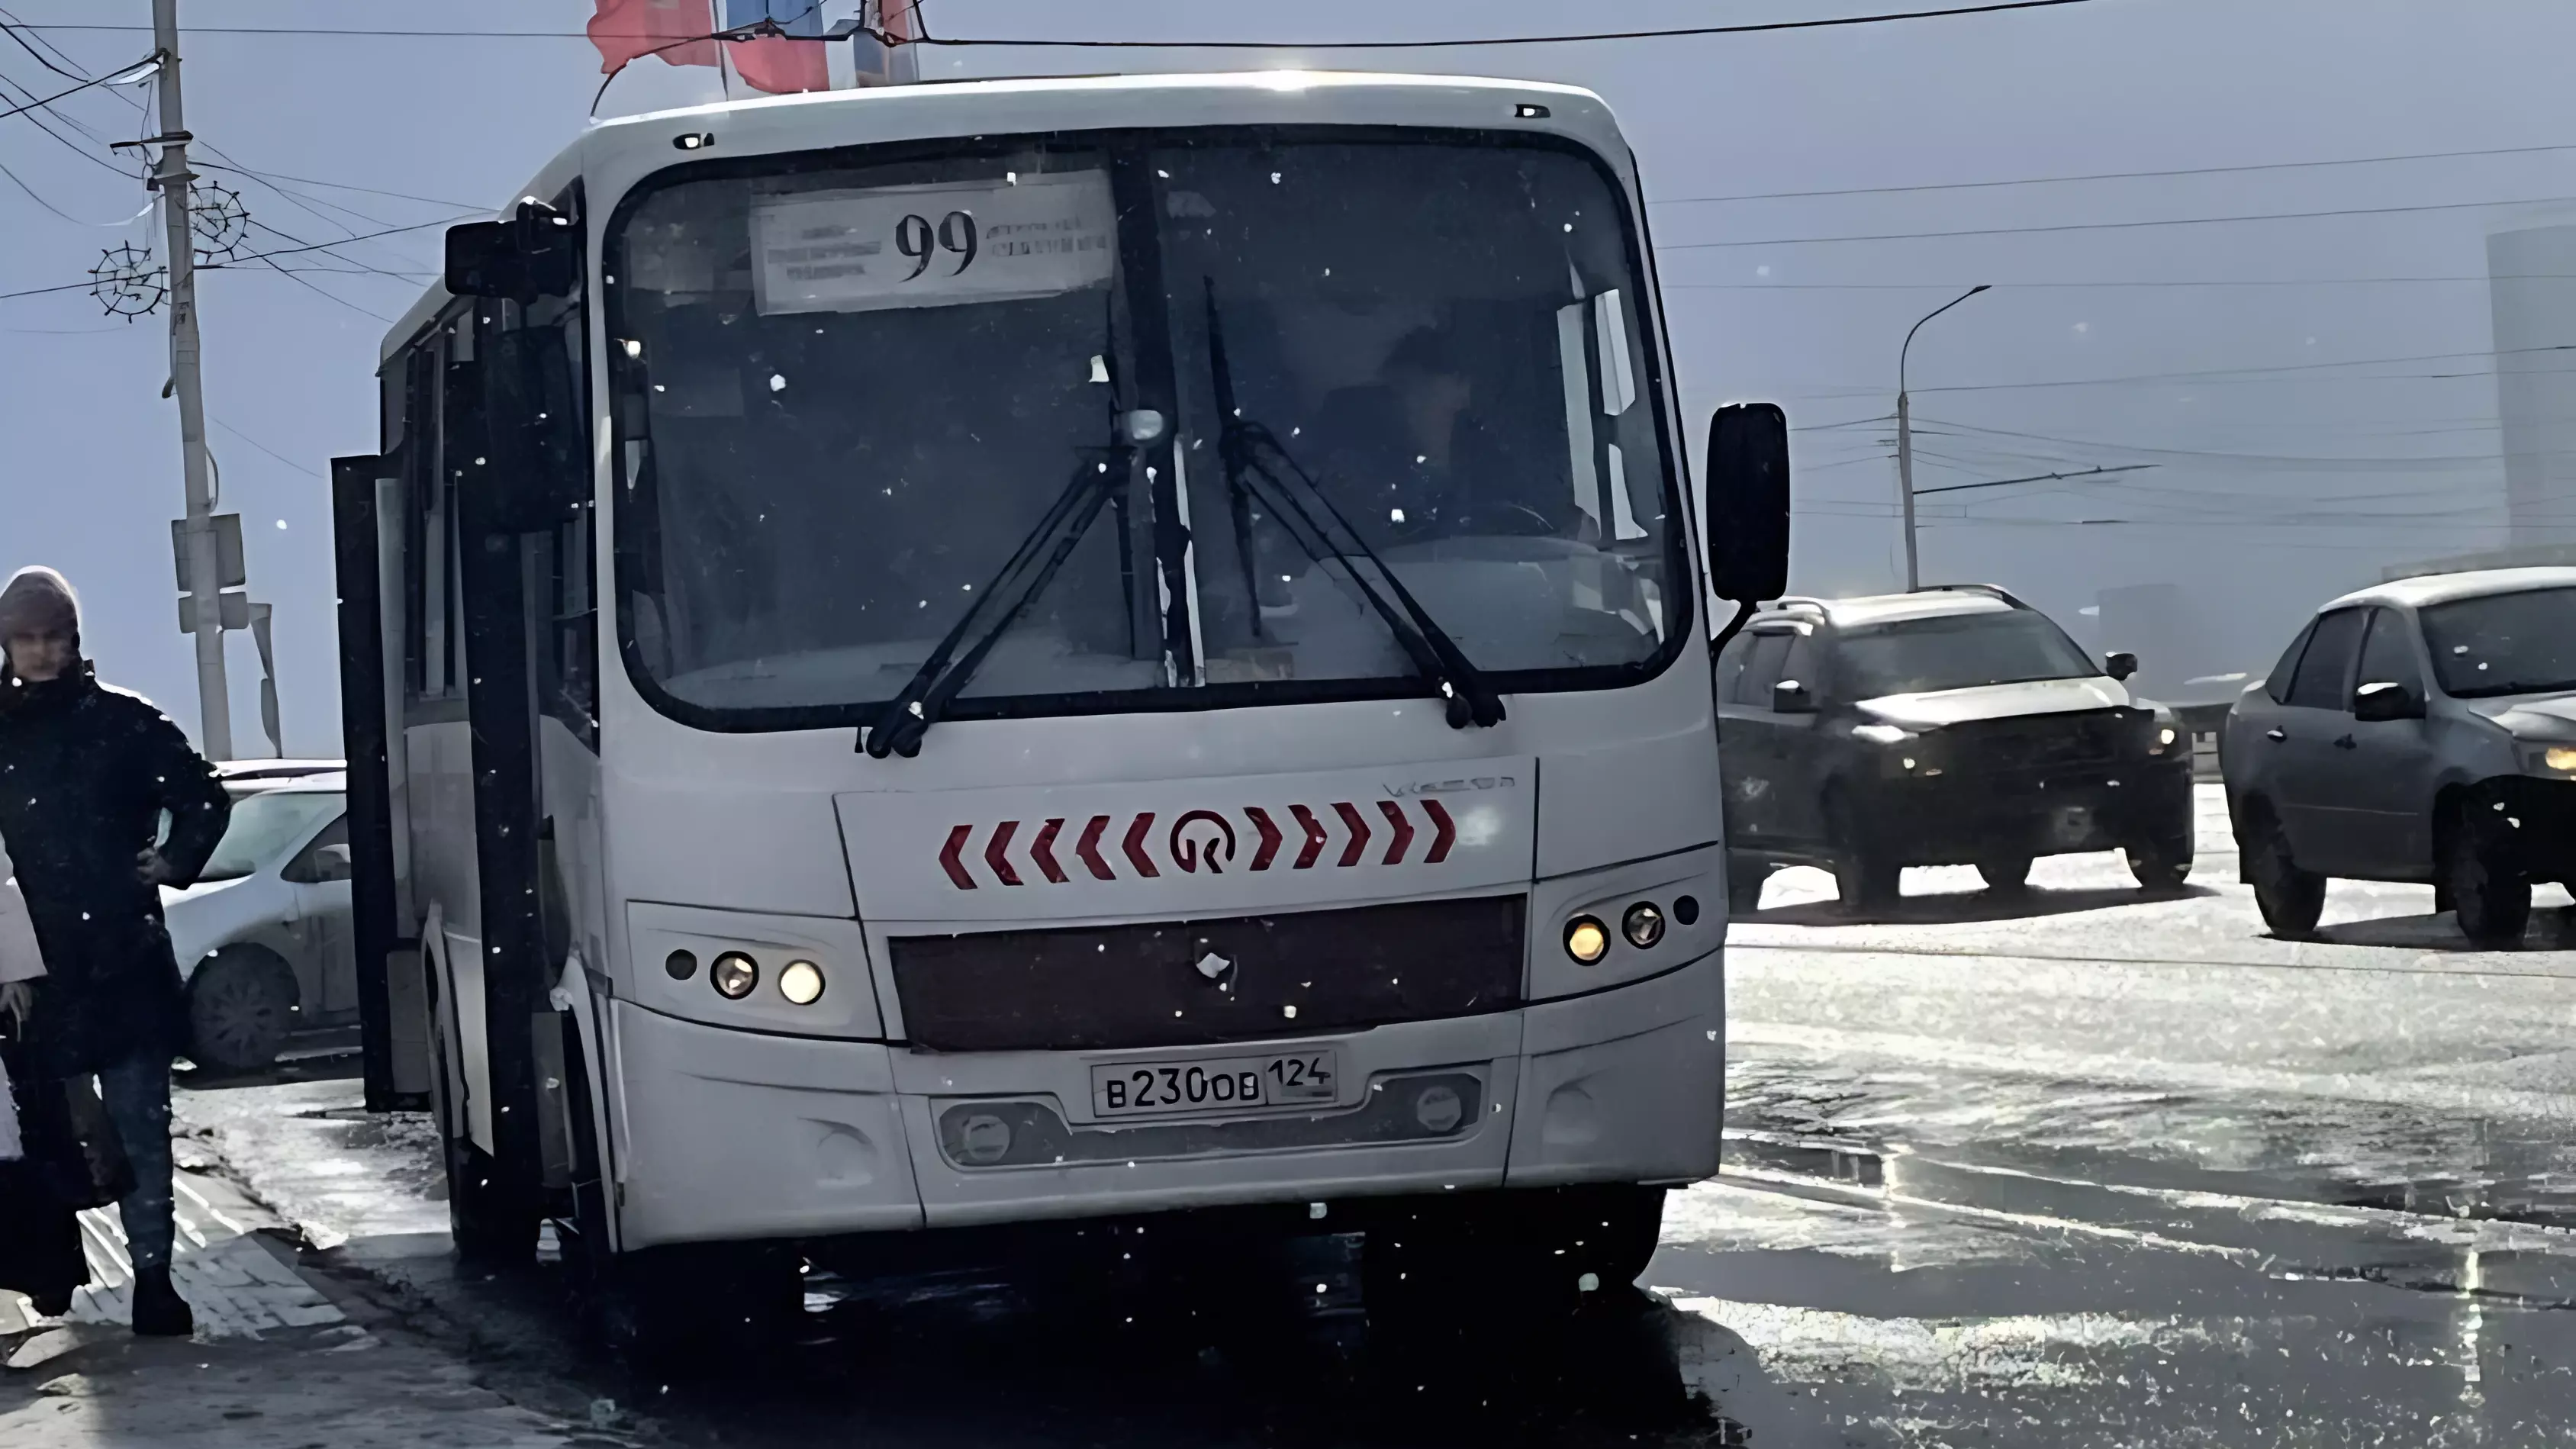 Из-за ремонта в центре Красноярска перекрыли улицу и изменили маршрут автобуса